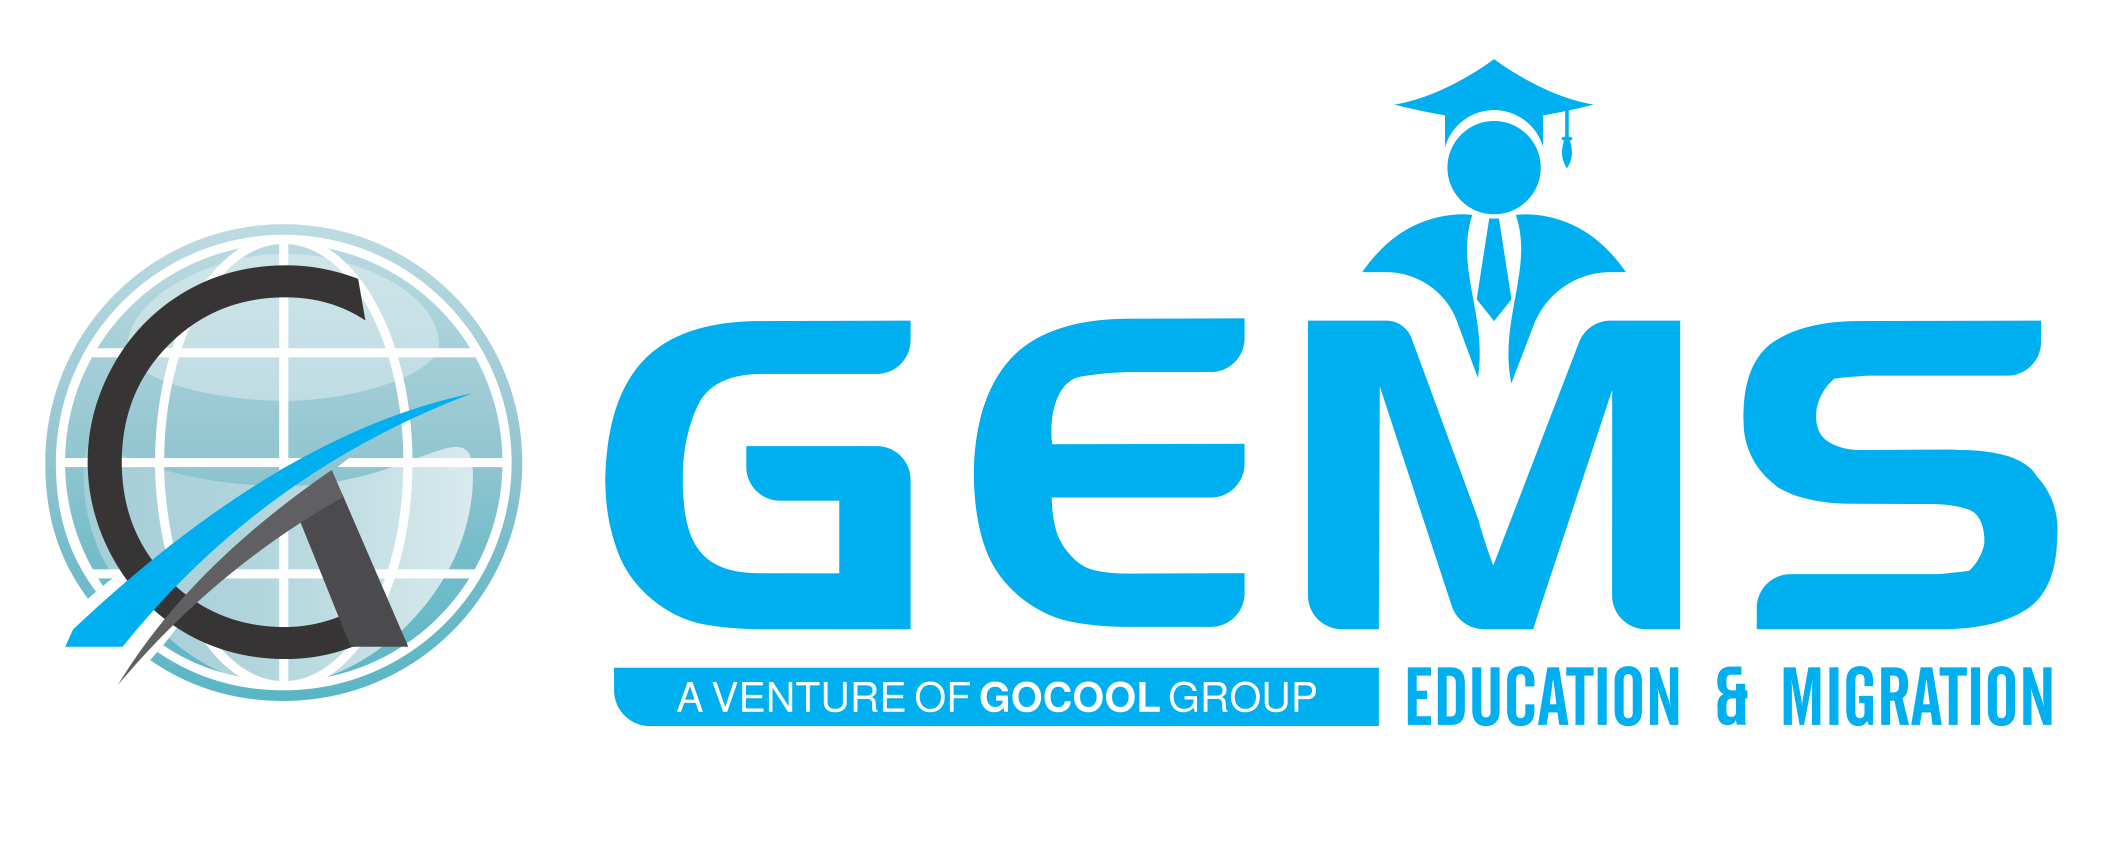 Gocool Group Logo